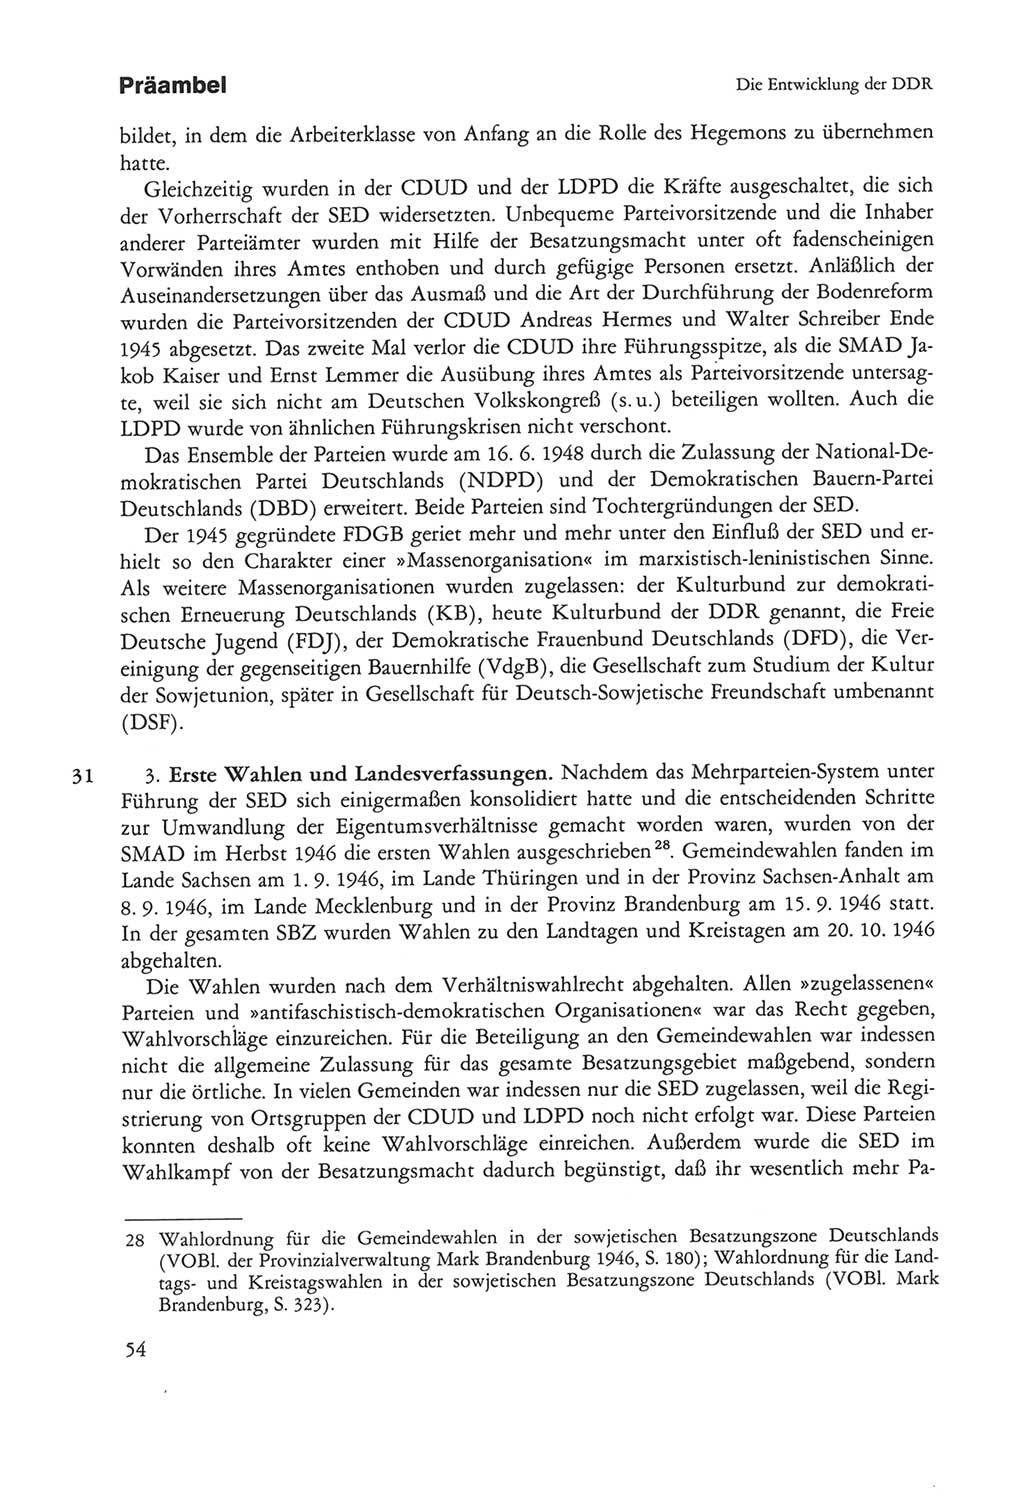 Die sozialistische Verfassung der Deutschen Demokratischen Republik (DDR), Kommentar 1982, Seite 54 (Soz. Verf. DDR Komm. 1982, S. 54)